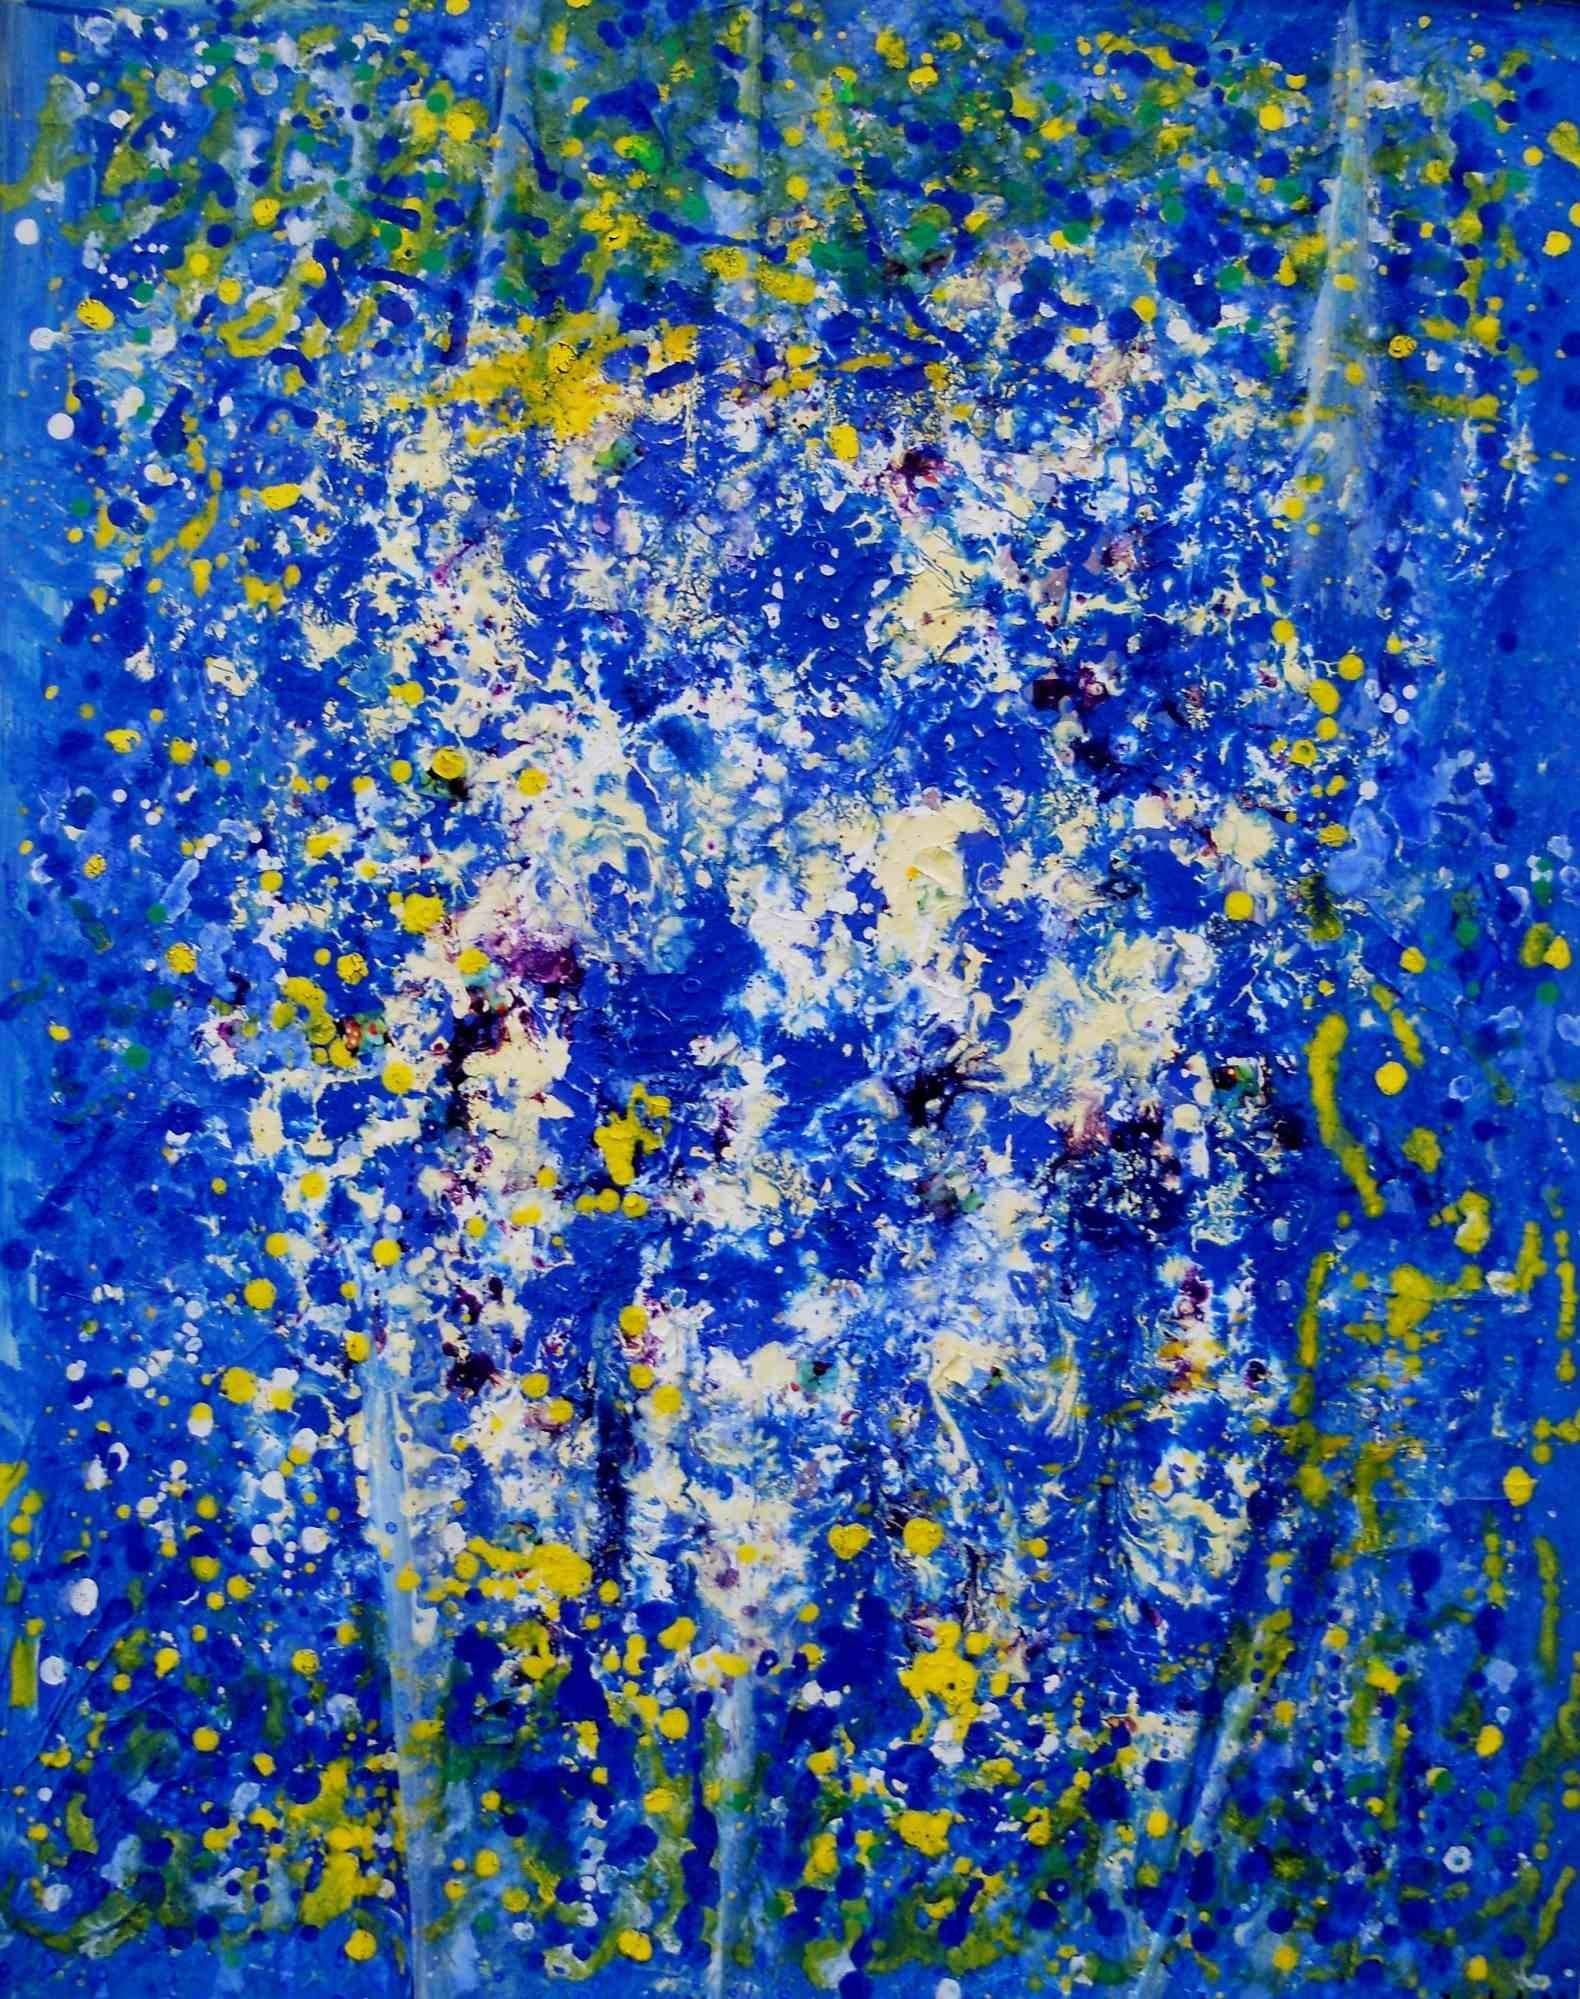 Dripping for Color Freedom est l'une des meilleures œuvres de l'artiste Giuseppe Zumbolo. Il est réalisé sur toile, peint à l'acrylique en 2016.

L'œuvre est réalisée avec la technique du dripping, avec une dominante de bleu et de jaune. La toile